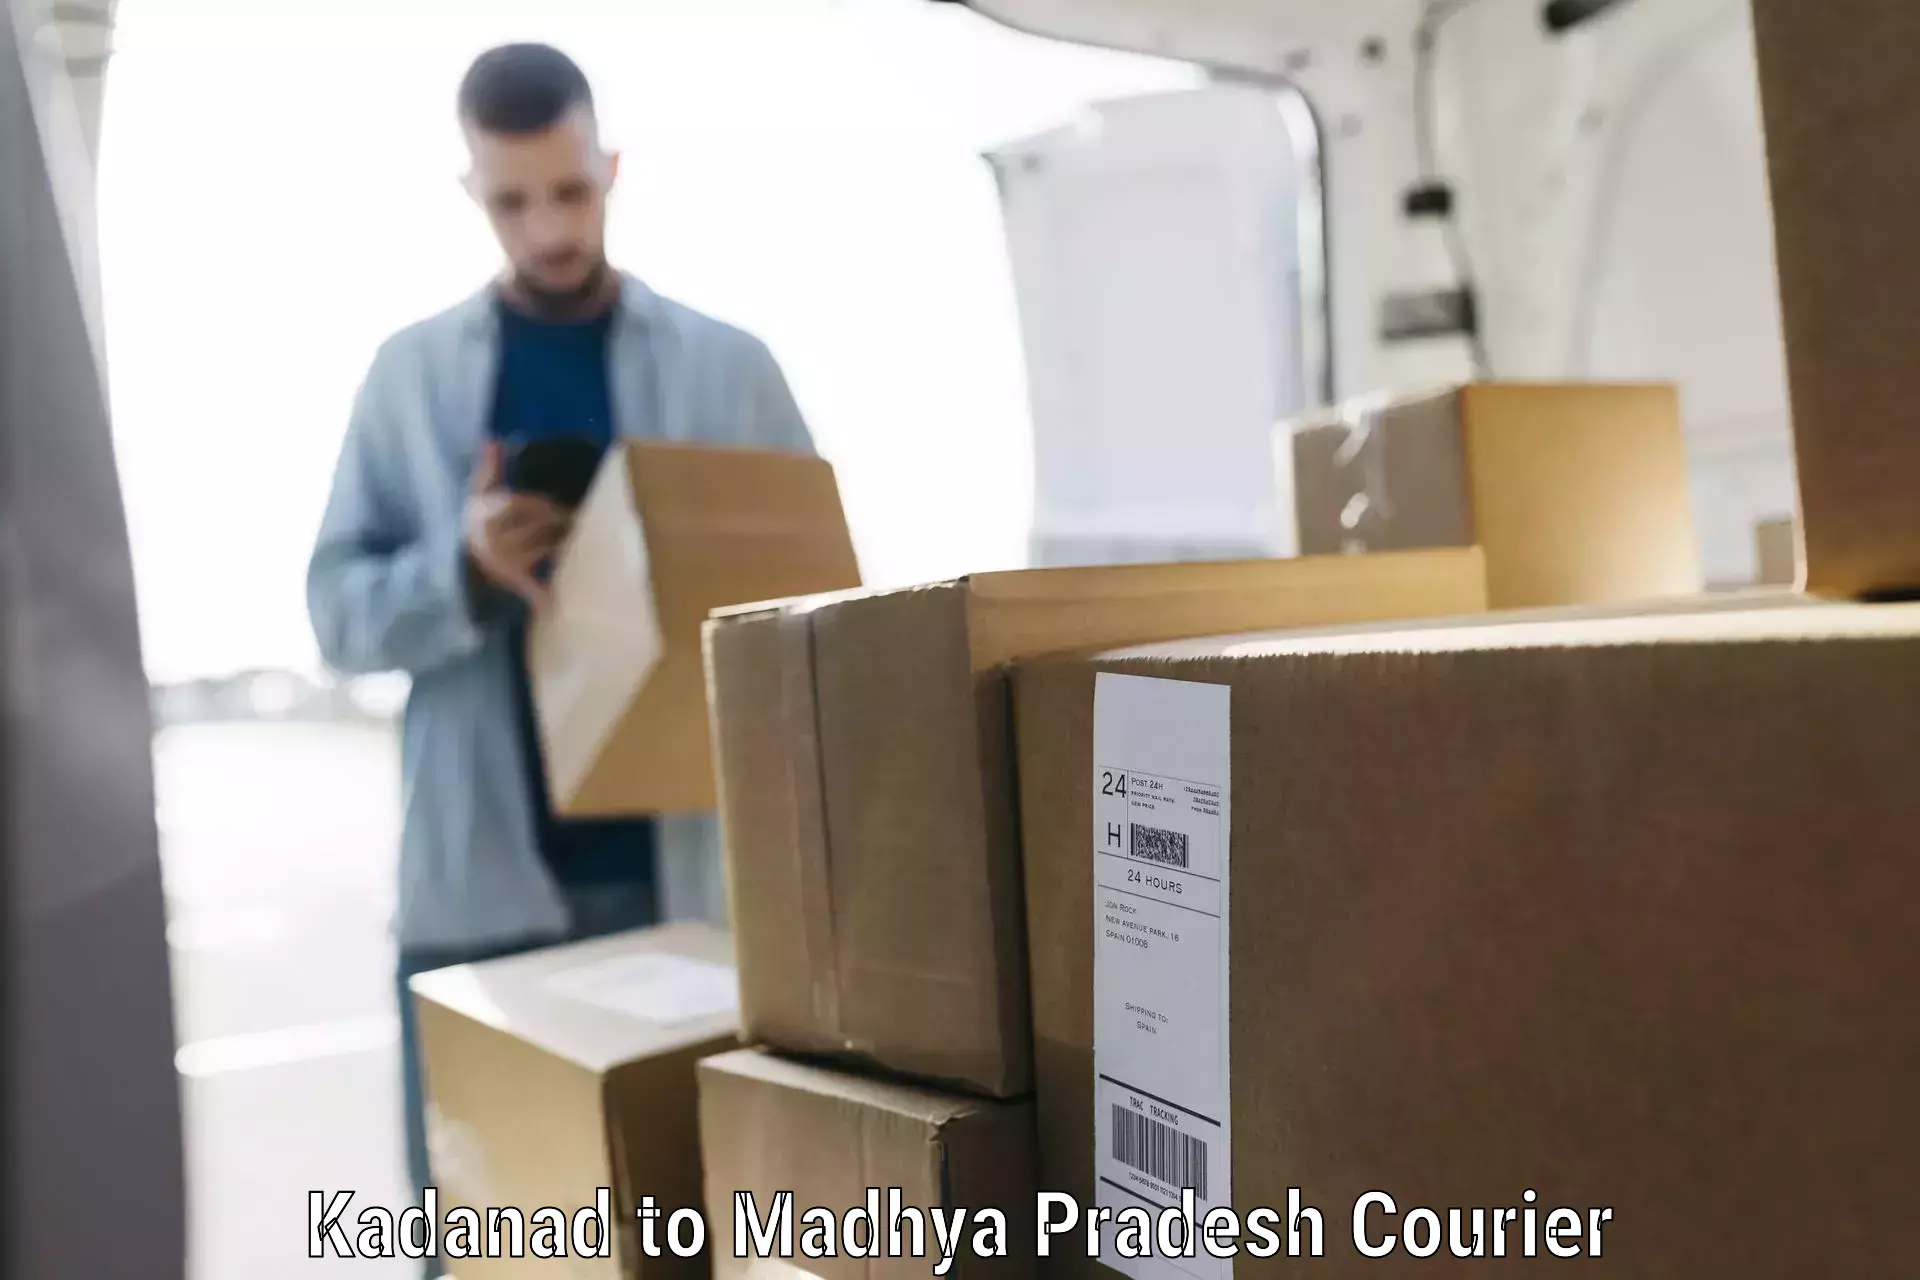 Luggage shipping estimate Kadanad to Nagda